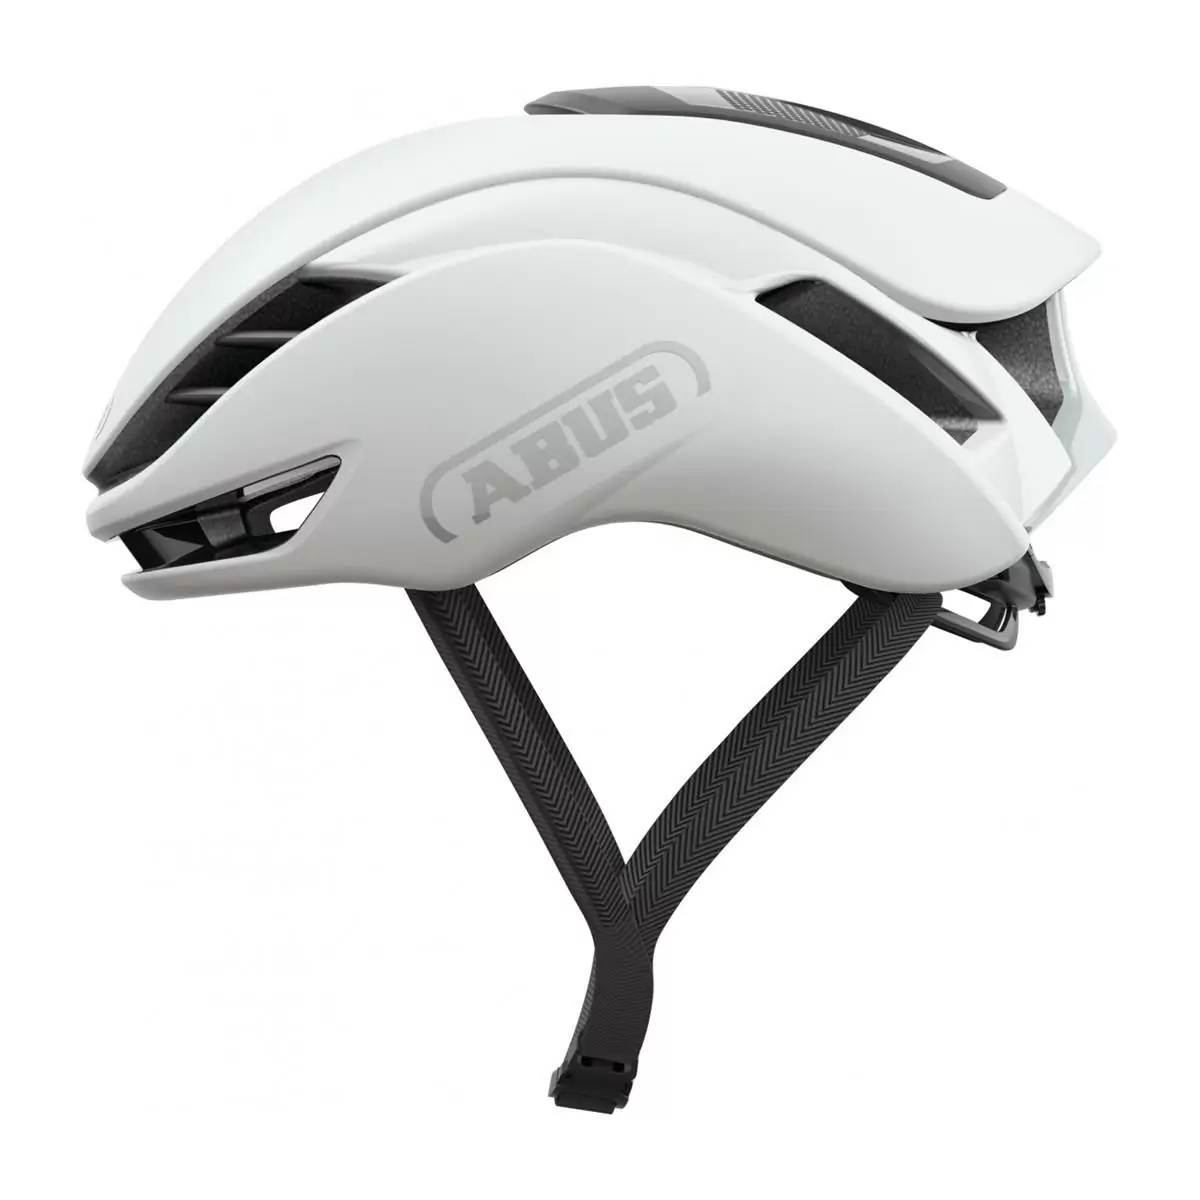 Gamechanger 2.0 Helmet Polar White Size S (51-55cm) - image